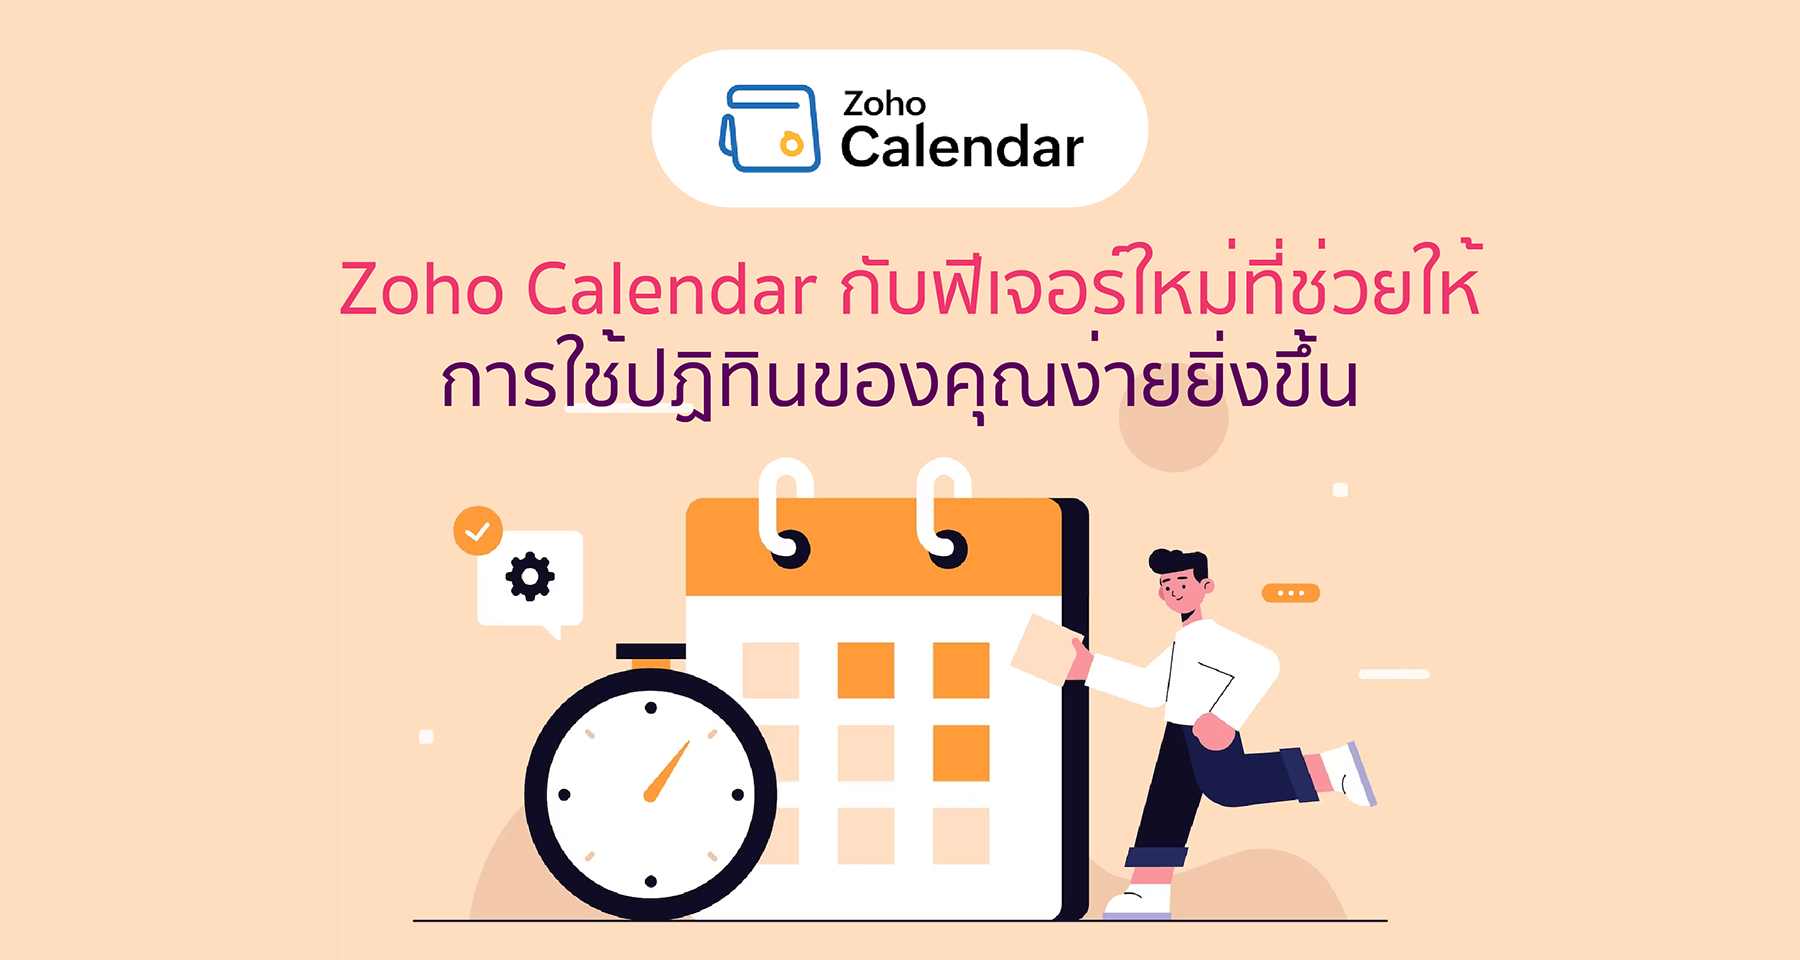 Zoho Calendar กับฟีเจอร์ใหม่ที่ช่วยให้การใช้ปฏิทินของคุณง่ายยิ่งขึ้น